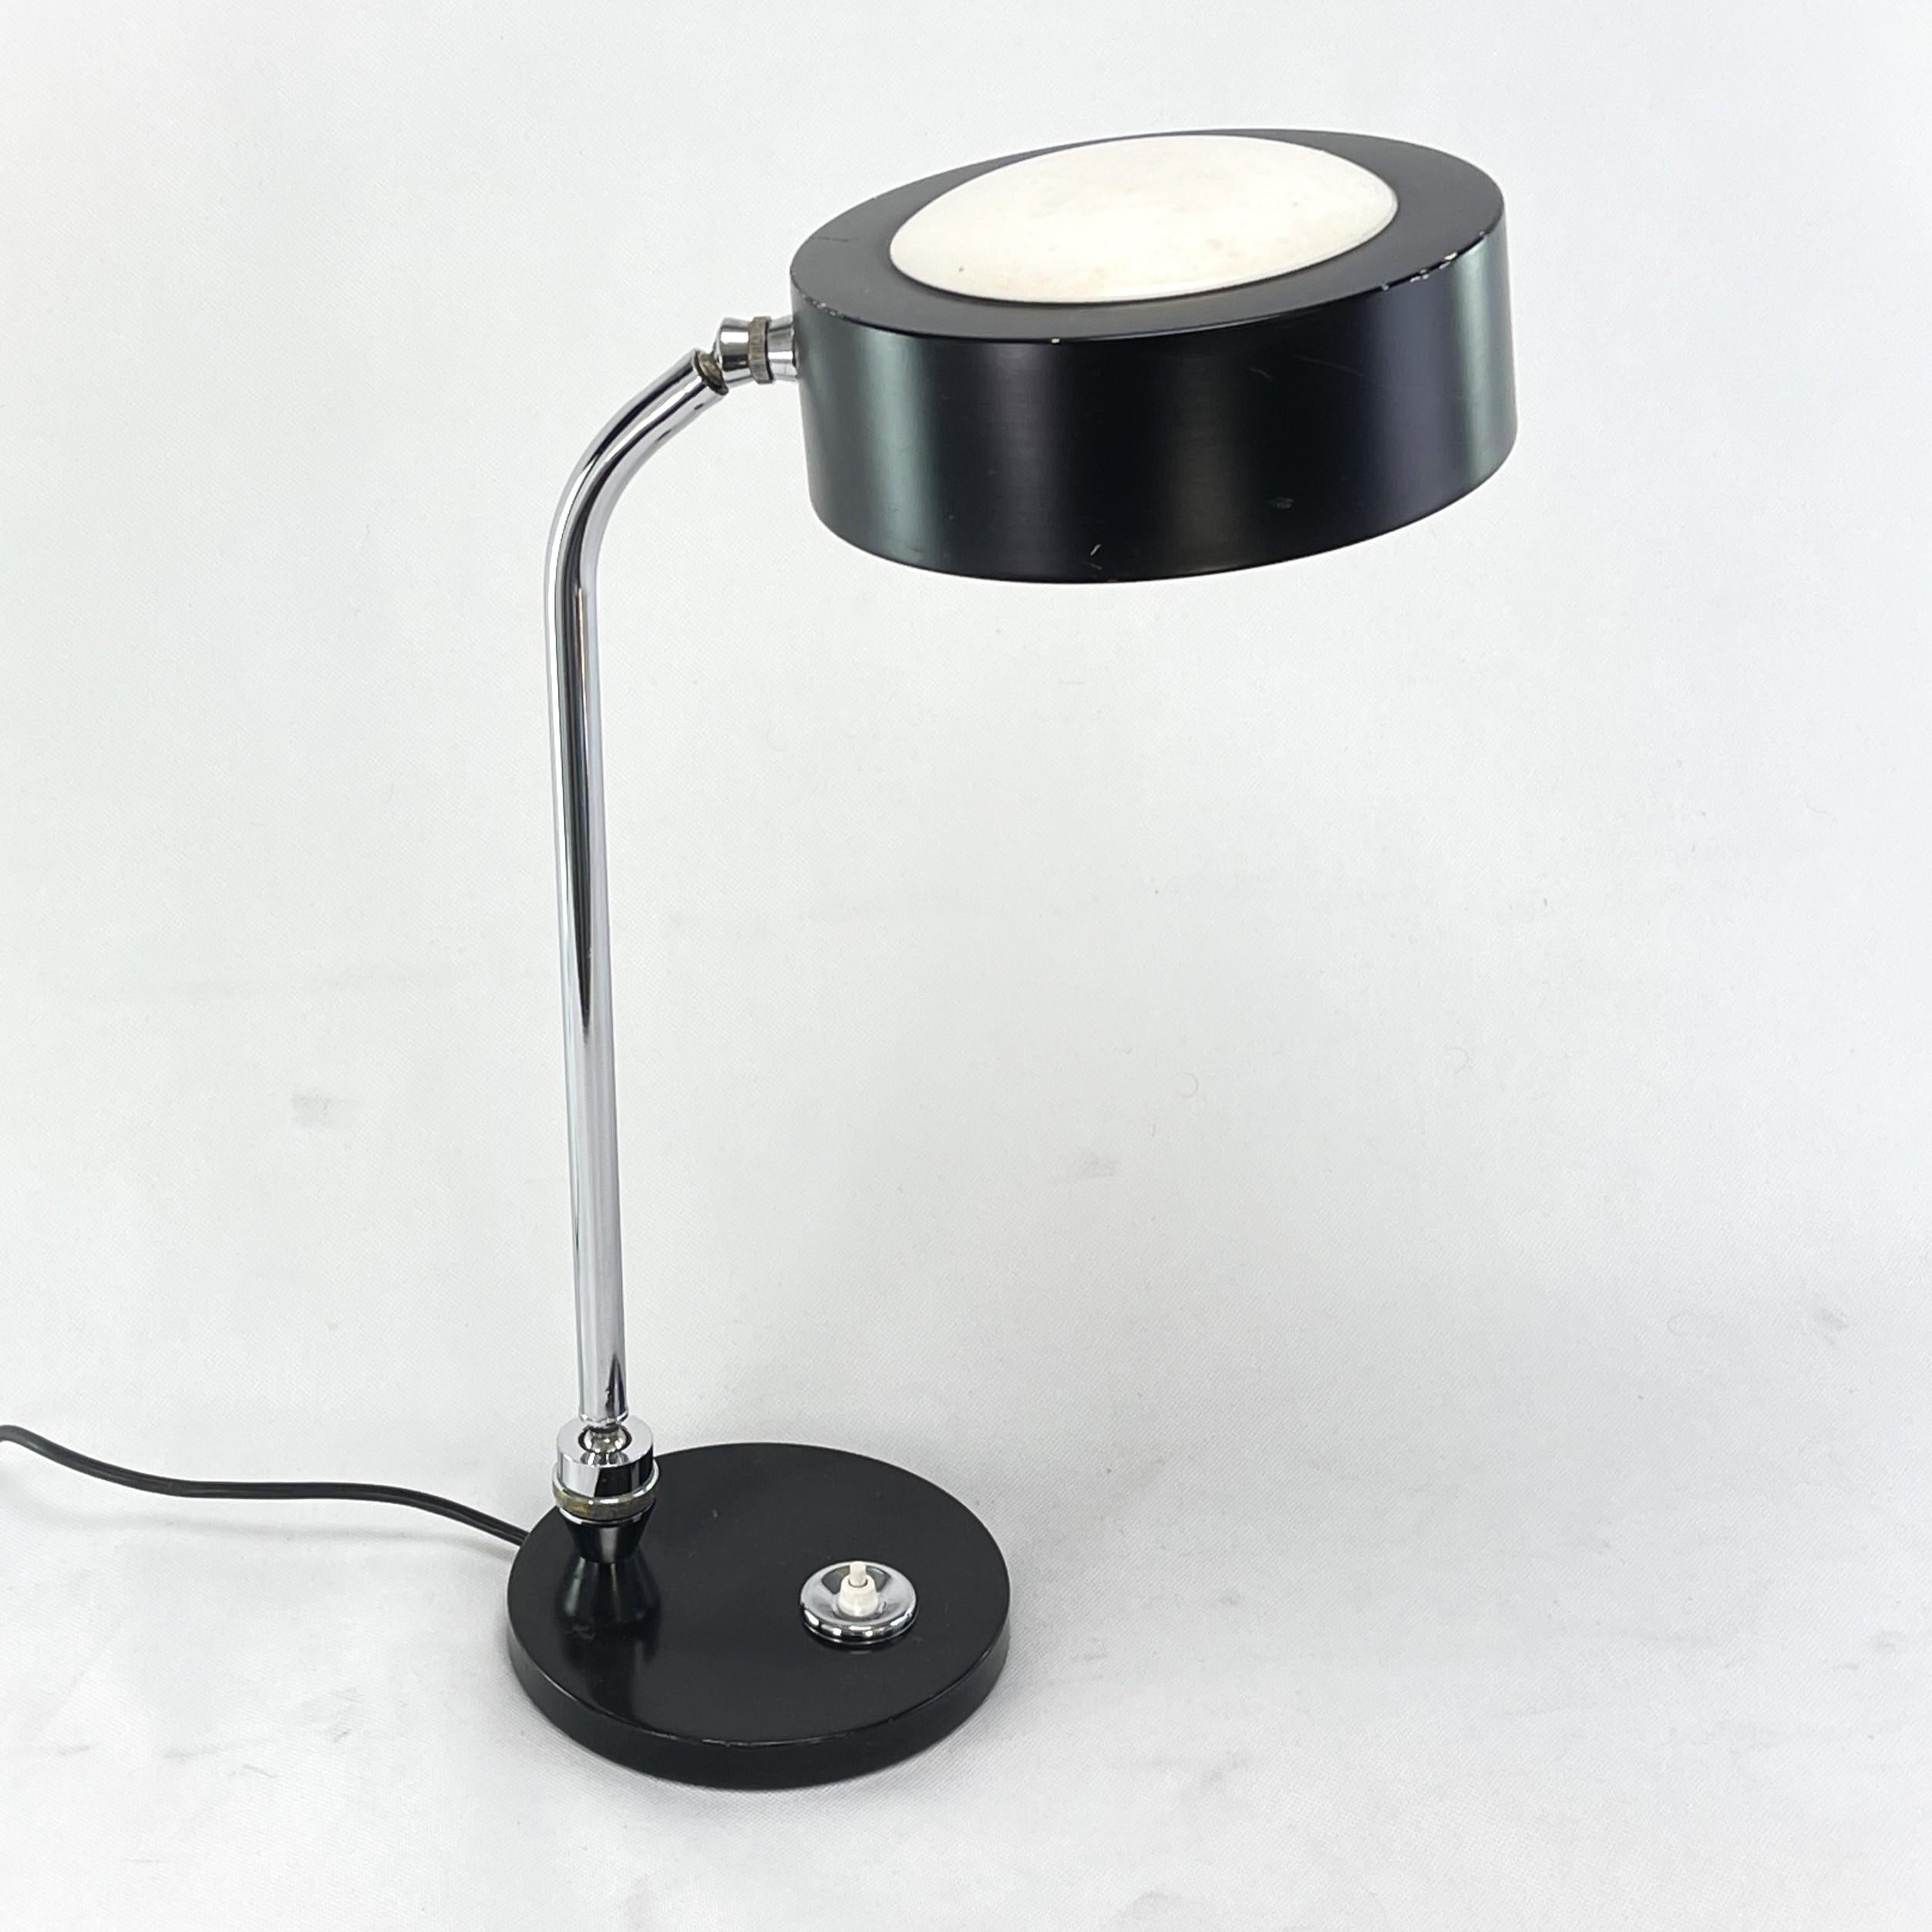 Lampe de table Art déco d'Andre Mounique (attribuée à)

La lampe de table a été conçue et fabriquée par la société Jumo.
Ce modèle est la version des années 1970. La lampe moderniste en tube d'acier chromé correspond clairement aux principes du